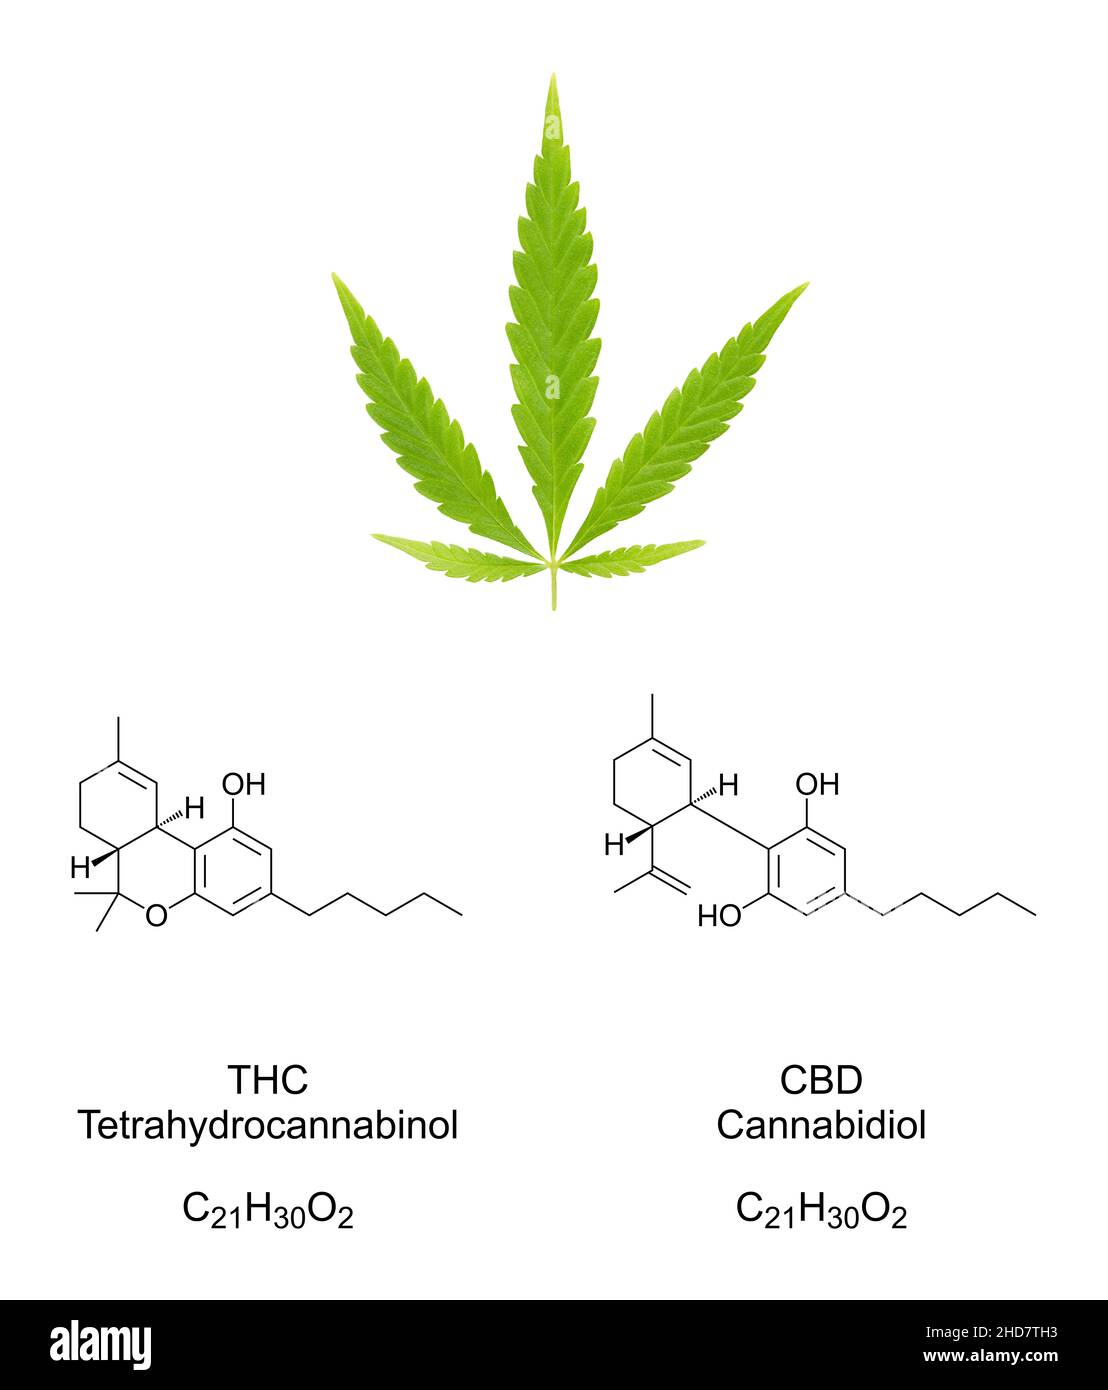 Foglia di cannabis con formule chimiche dei cannabinoidi THC e CBD. Foglie di canapa e strutture chimiche di tetraidrocannabinolo e cannabidiolo. Foto Stock